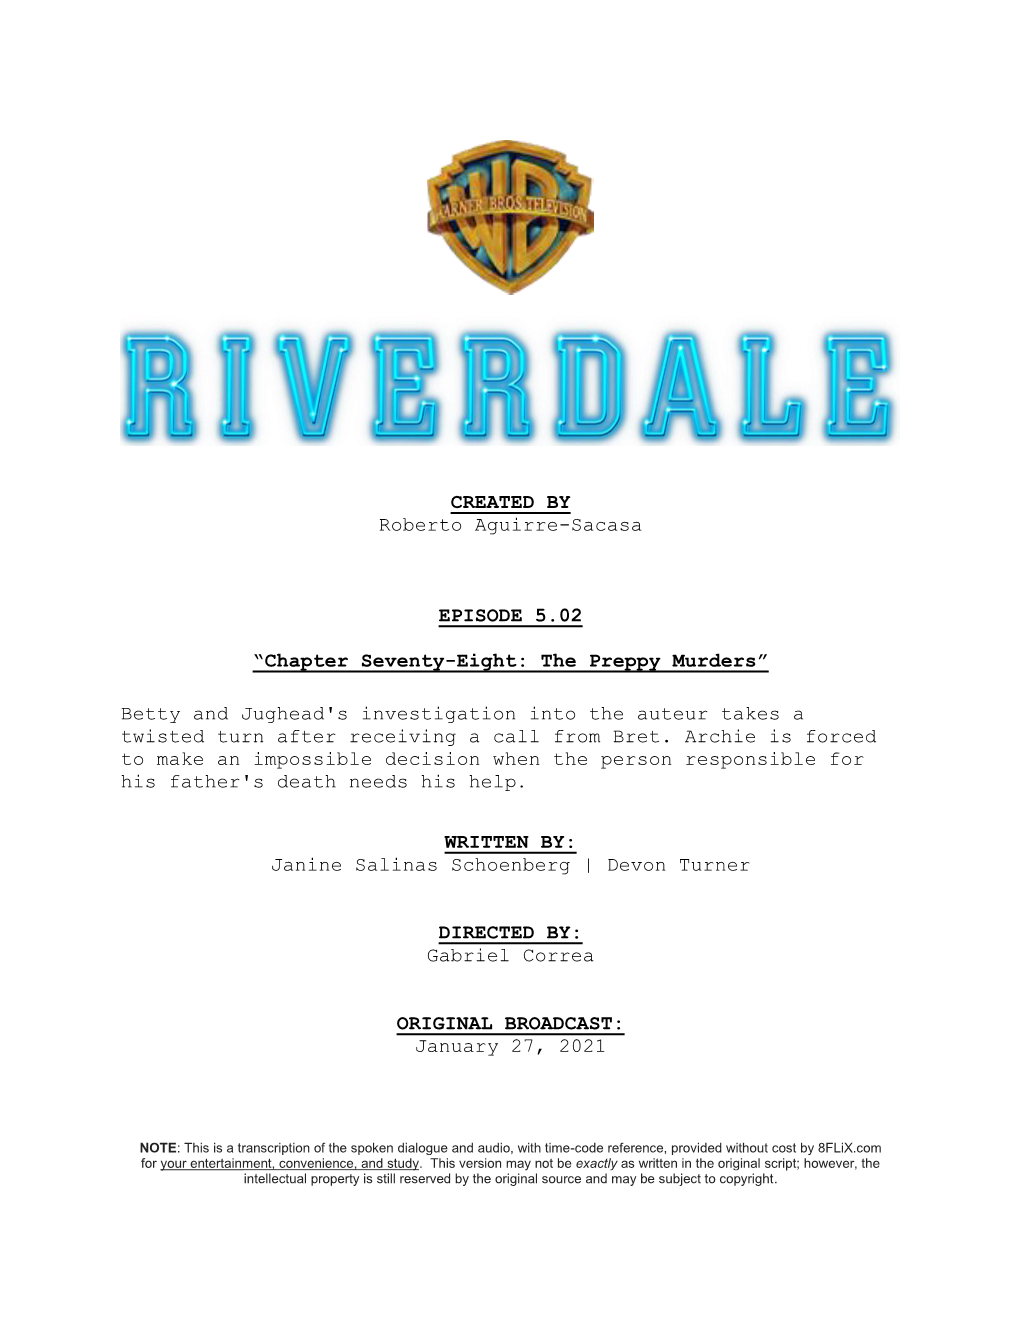 Riverdale | Dialogue Transcript | S5:E2